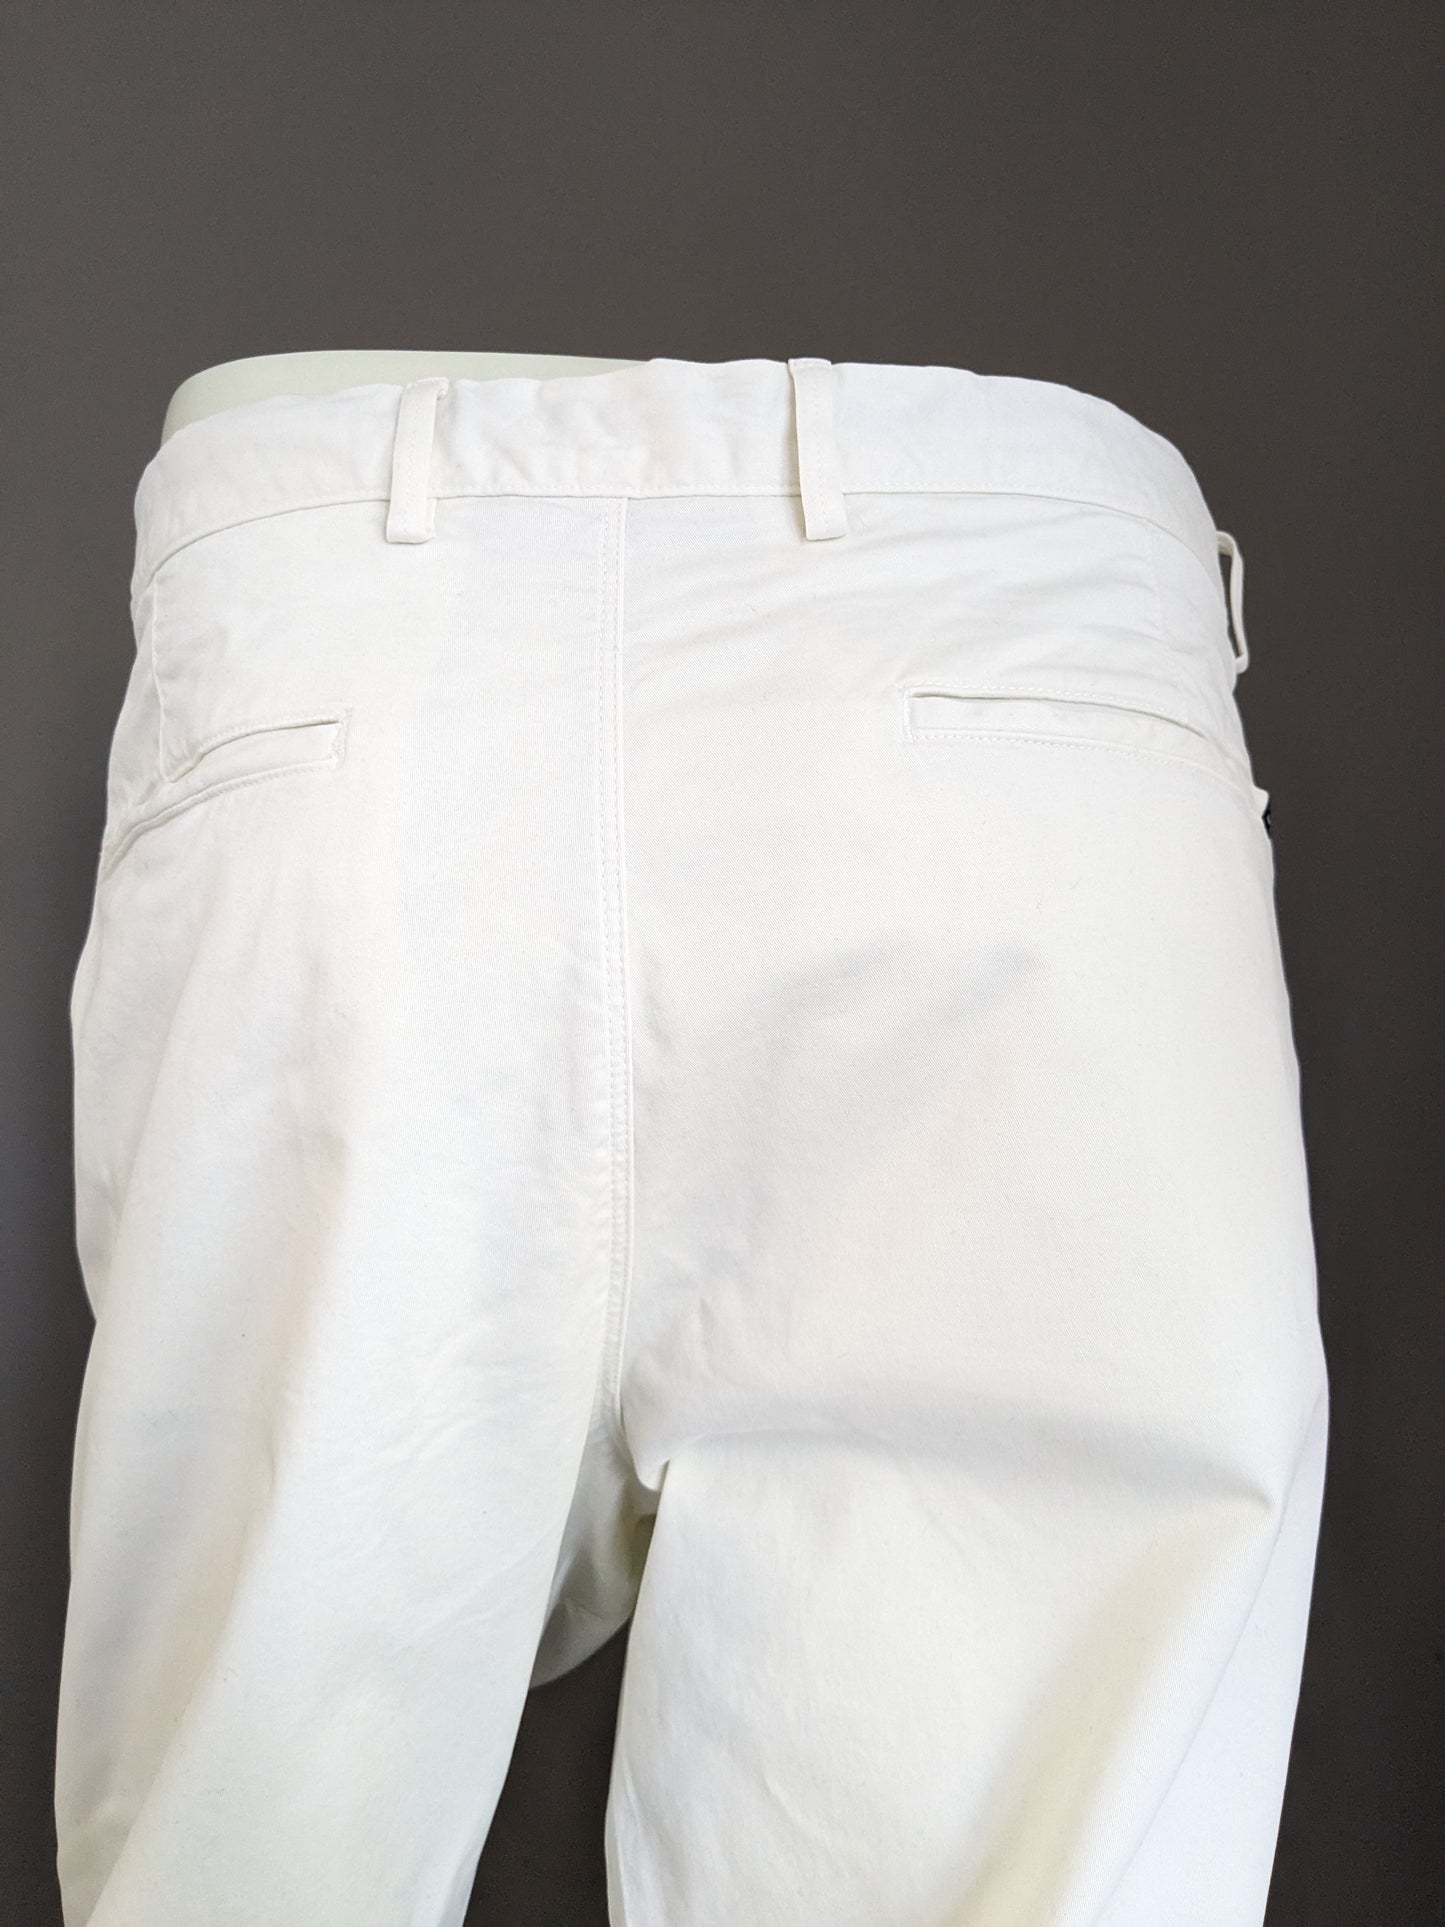 Calvin Klein broek / pantalon. Wit gekleurd. Maat 58 / XL. Straight Fit. Stretch.